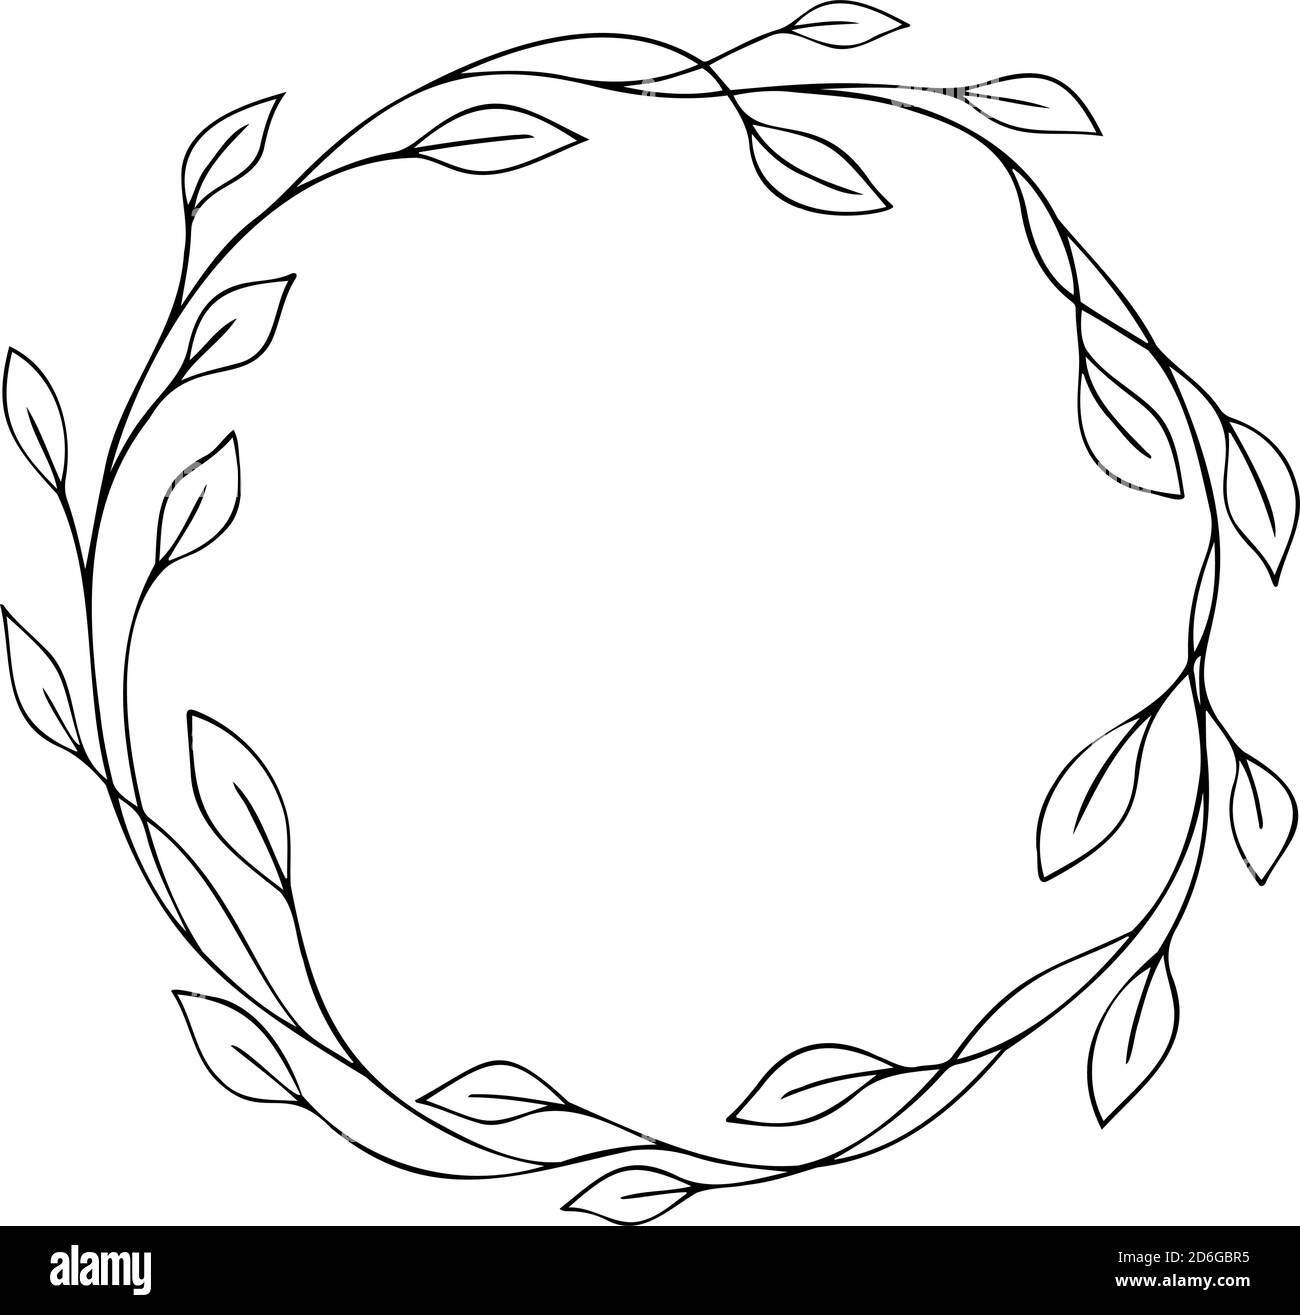 Corona floreale disegnata a mano con foglie. Elementi di design per inviti a matrimoni, logo, biglietti d'auguri, blog, poster e altro ancora. Illustrazione vettoriale Illustrazione Vettoriale